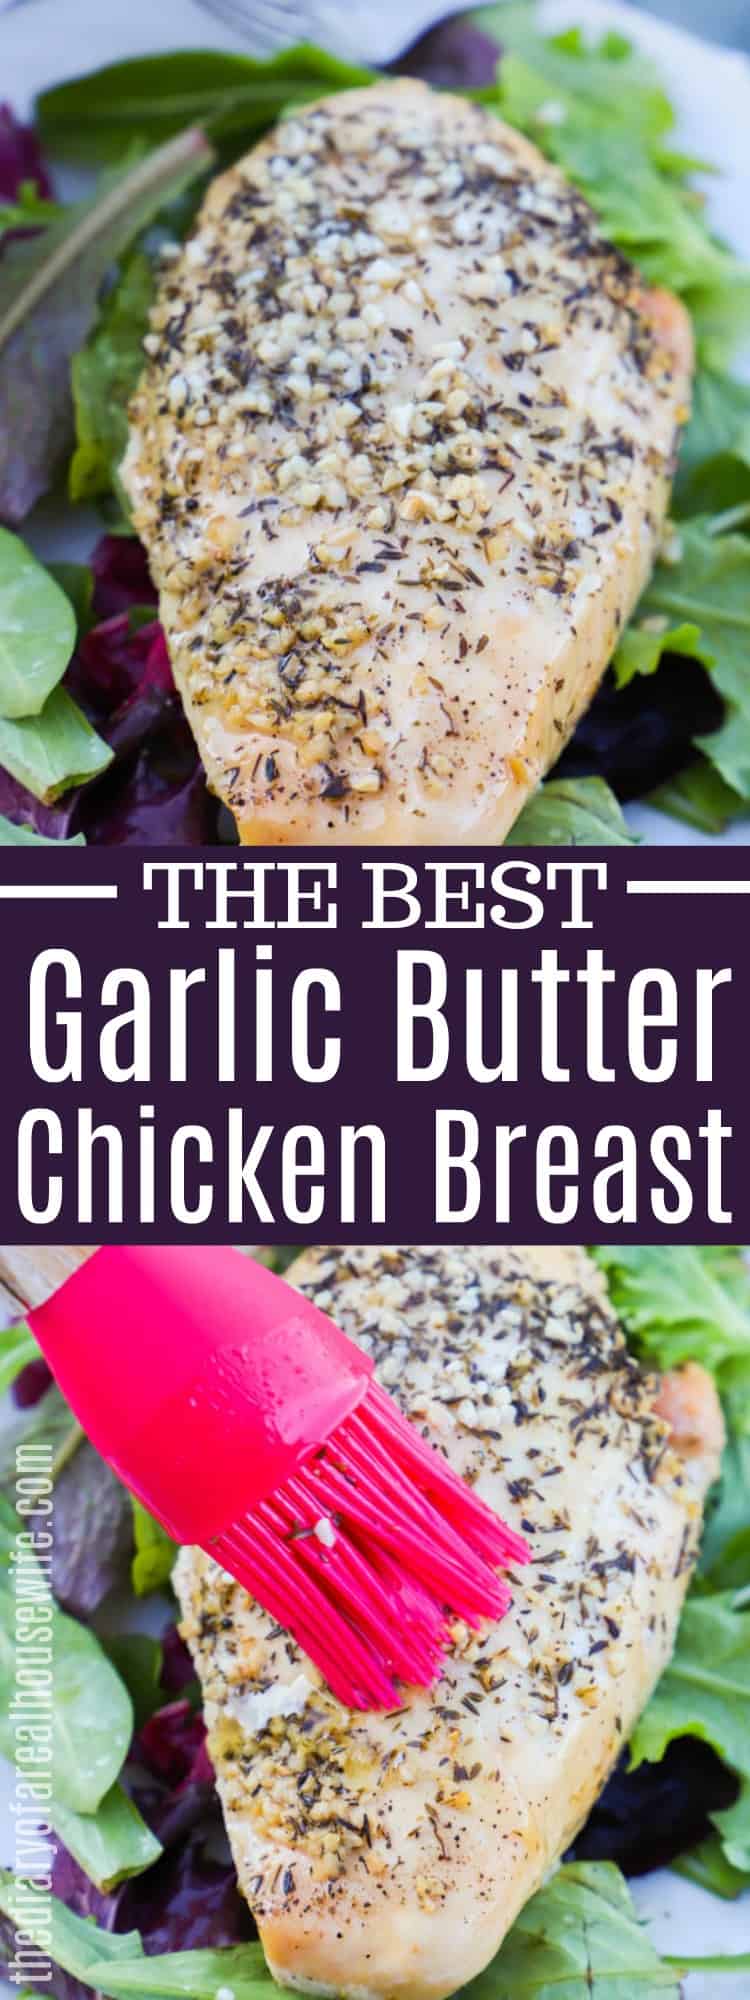 Garlic Butter Chicken Breast